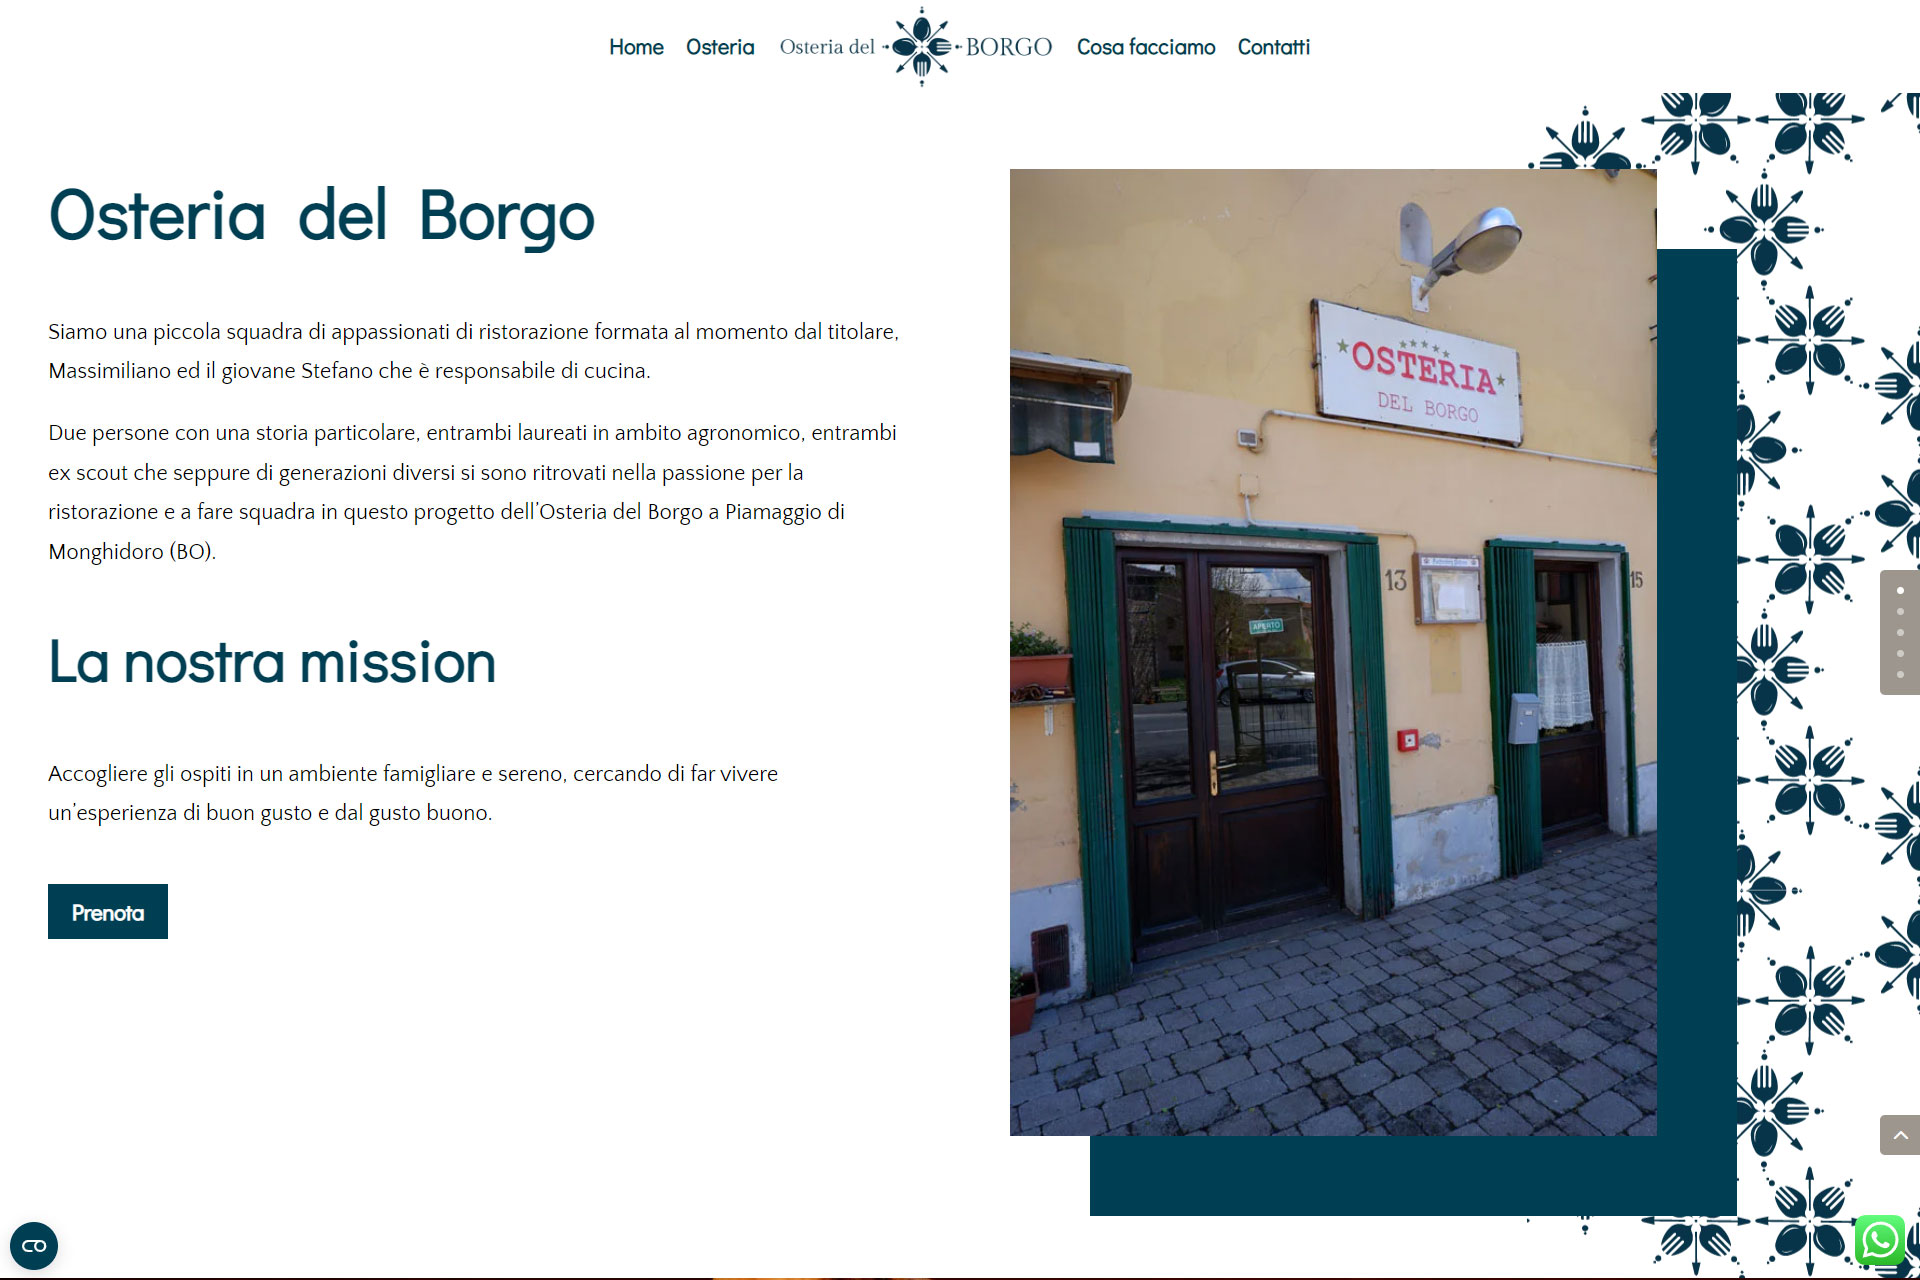 lv-design-realizzazione-siti-web-bologna-portfolio-osteria-del-borgo-slide-2